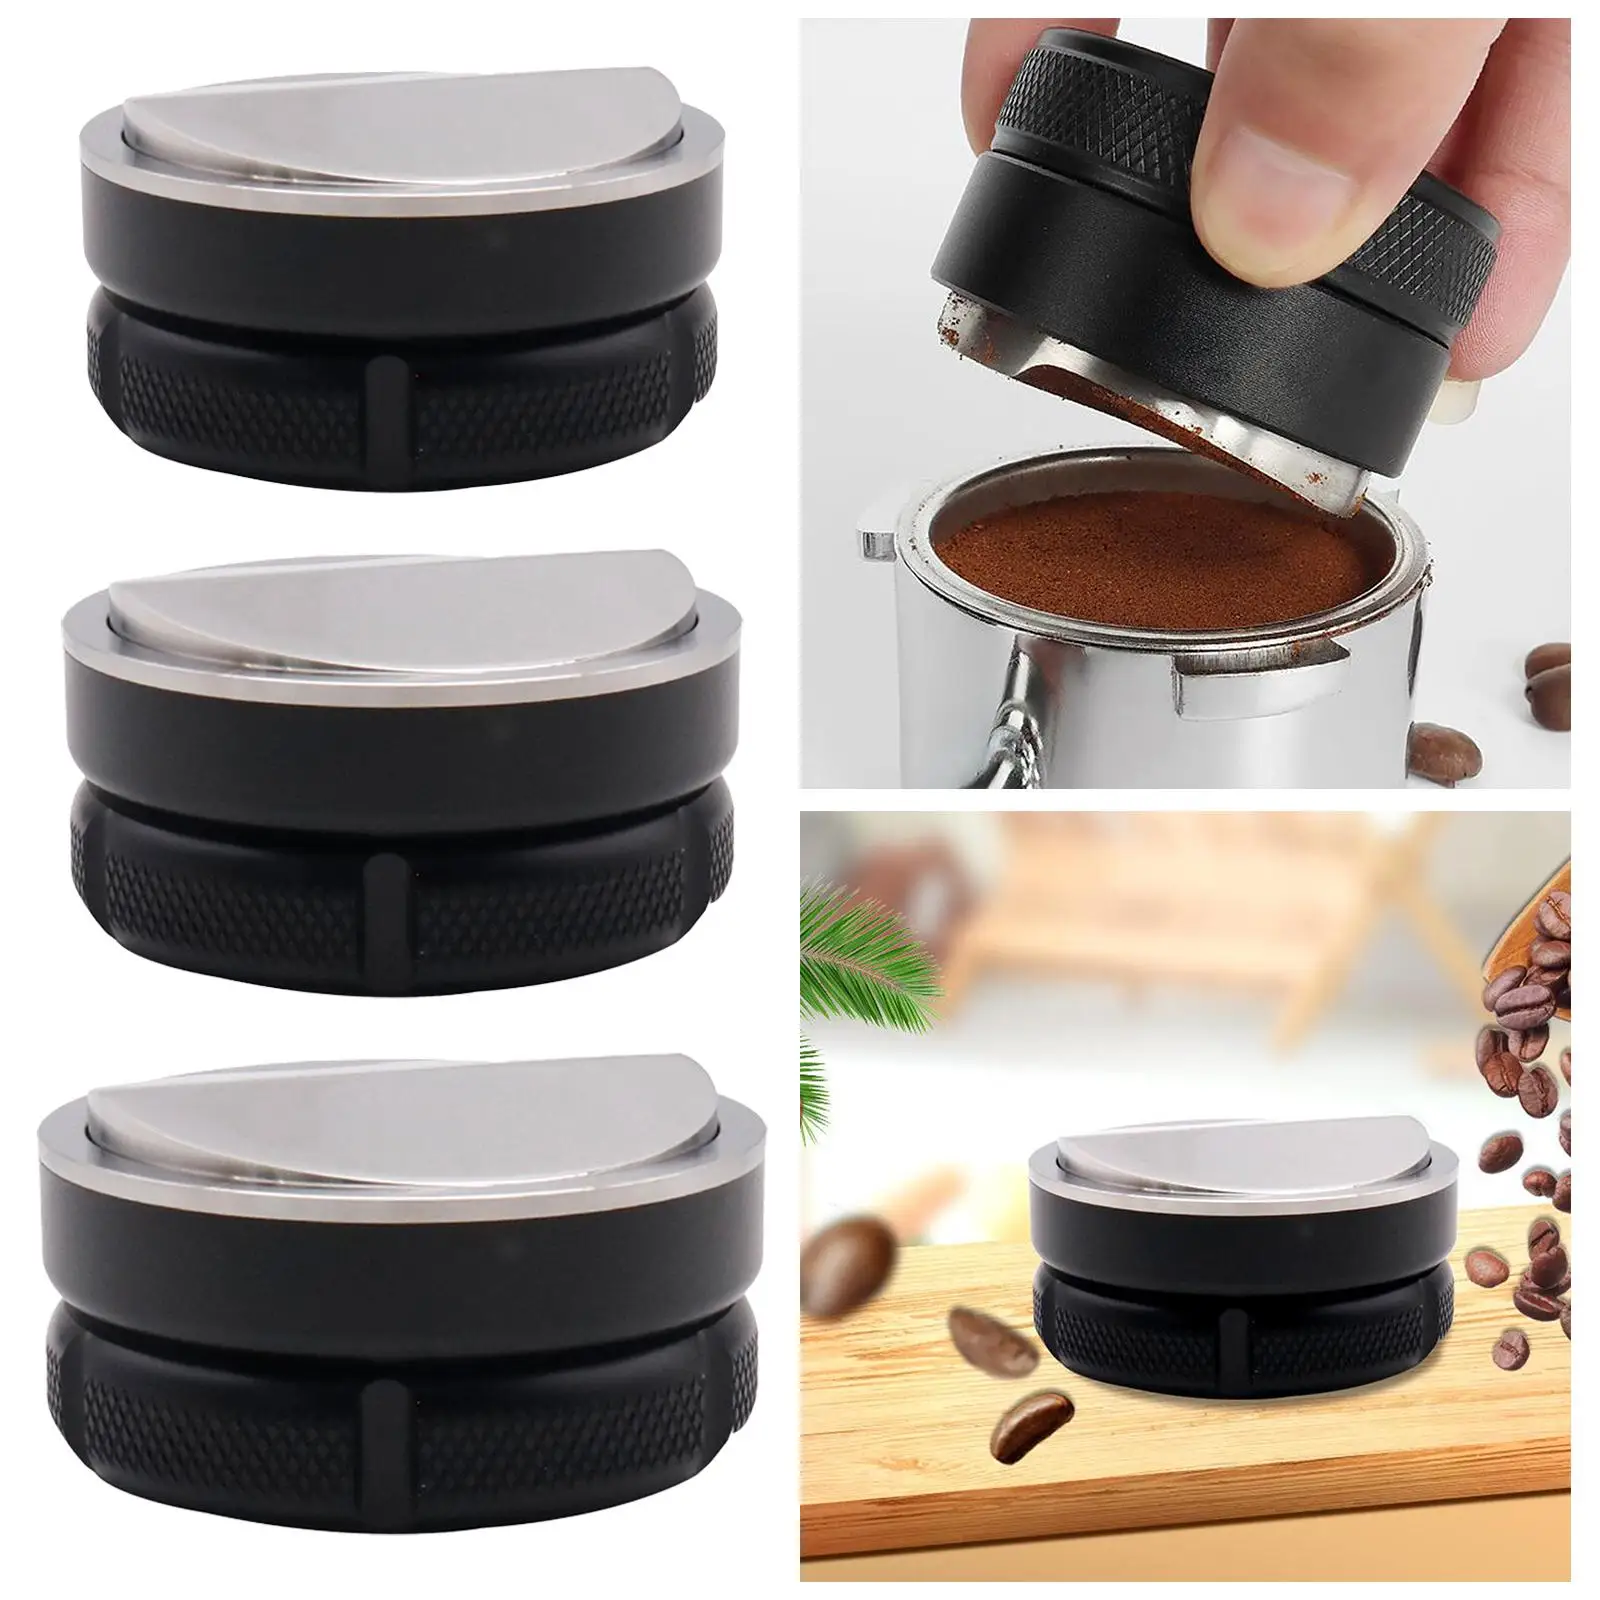 Espresso Hand Tampers Professional Coffee Leveler Espresso Distribution Tool for Espresso Machine Parts Home Cafe Supplies